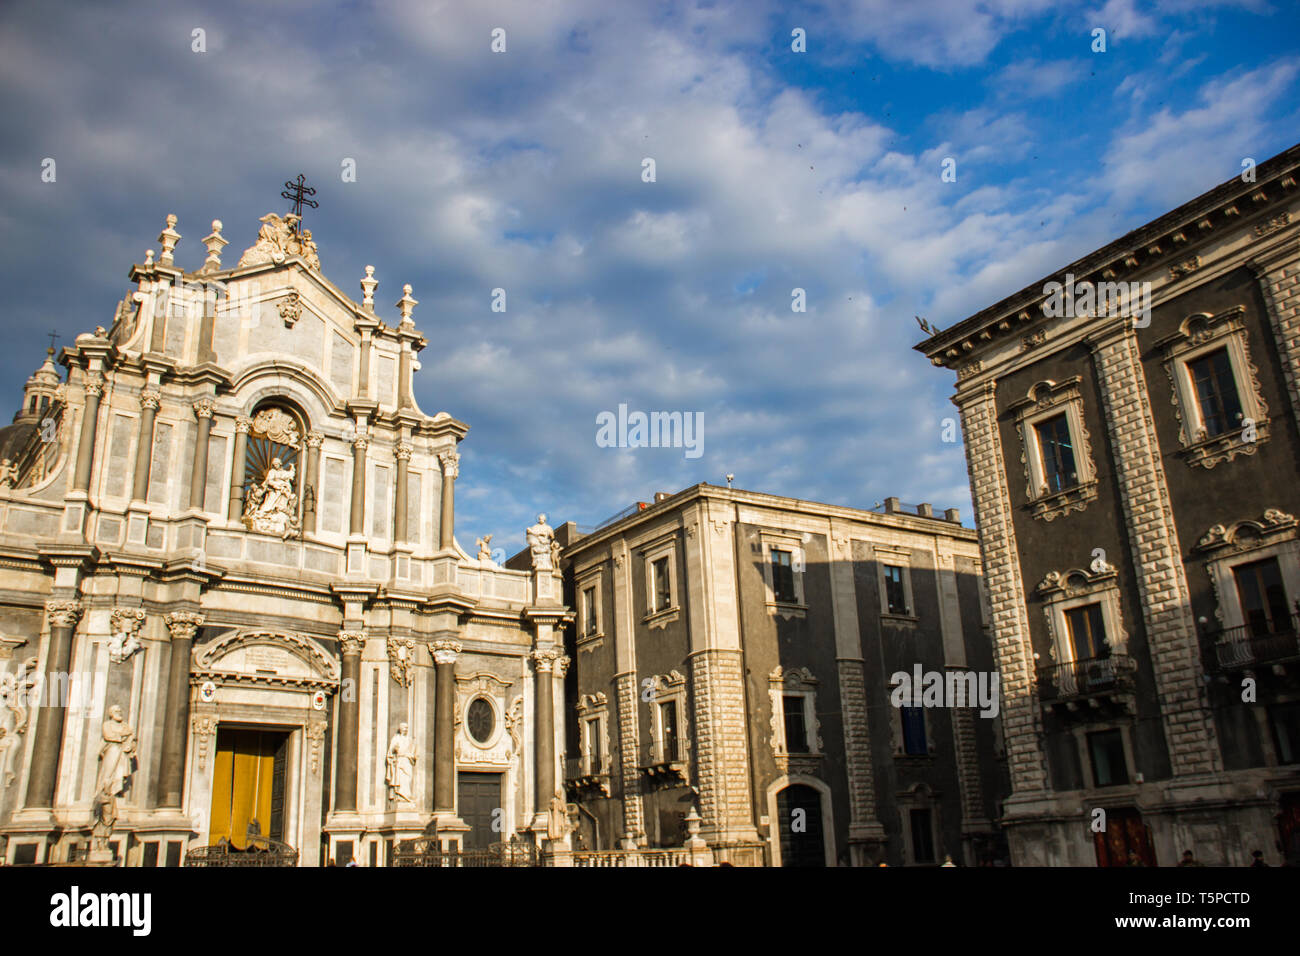 Die Kathedrale von Catania Frontansicht mit barocken Architektur Gebäude an der Seite Stockfoto